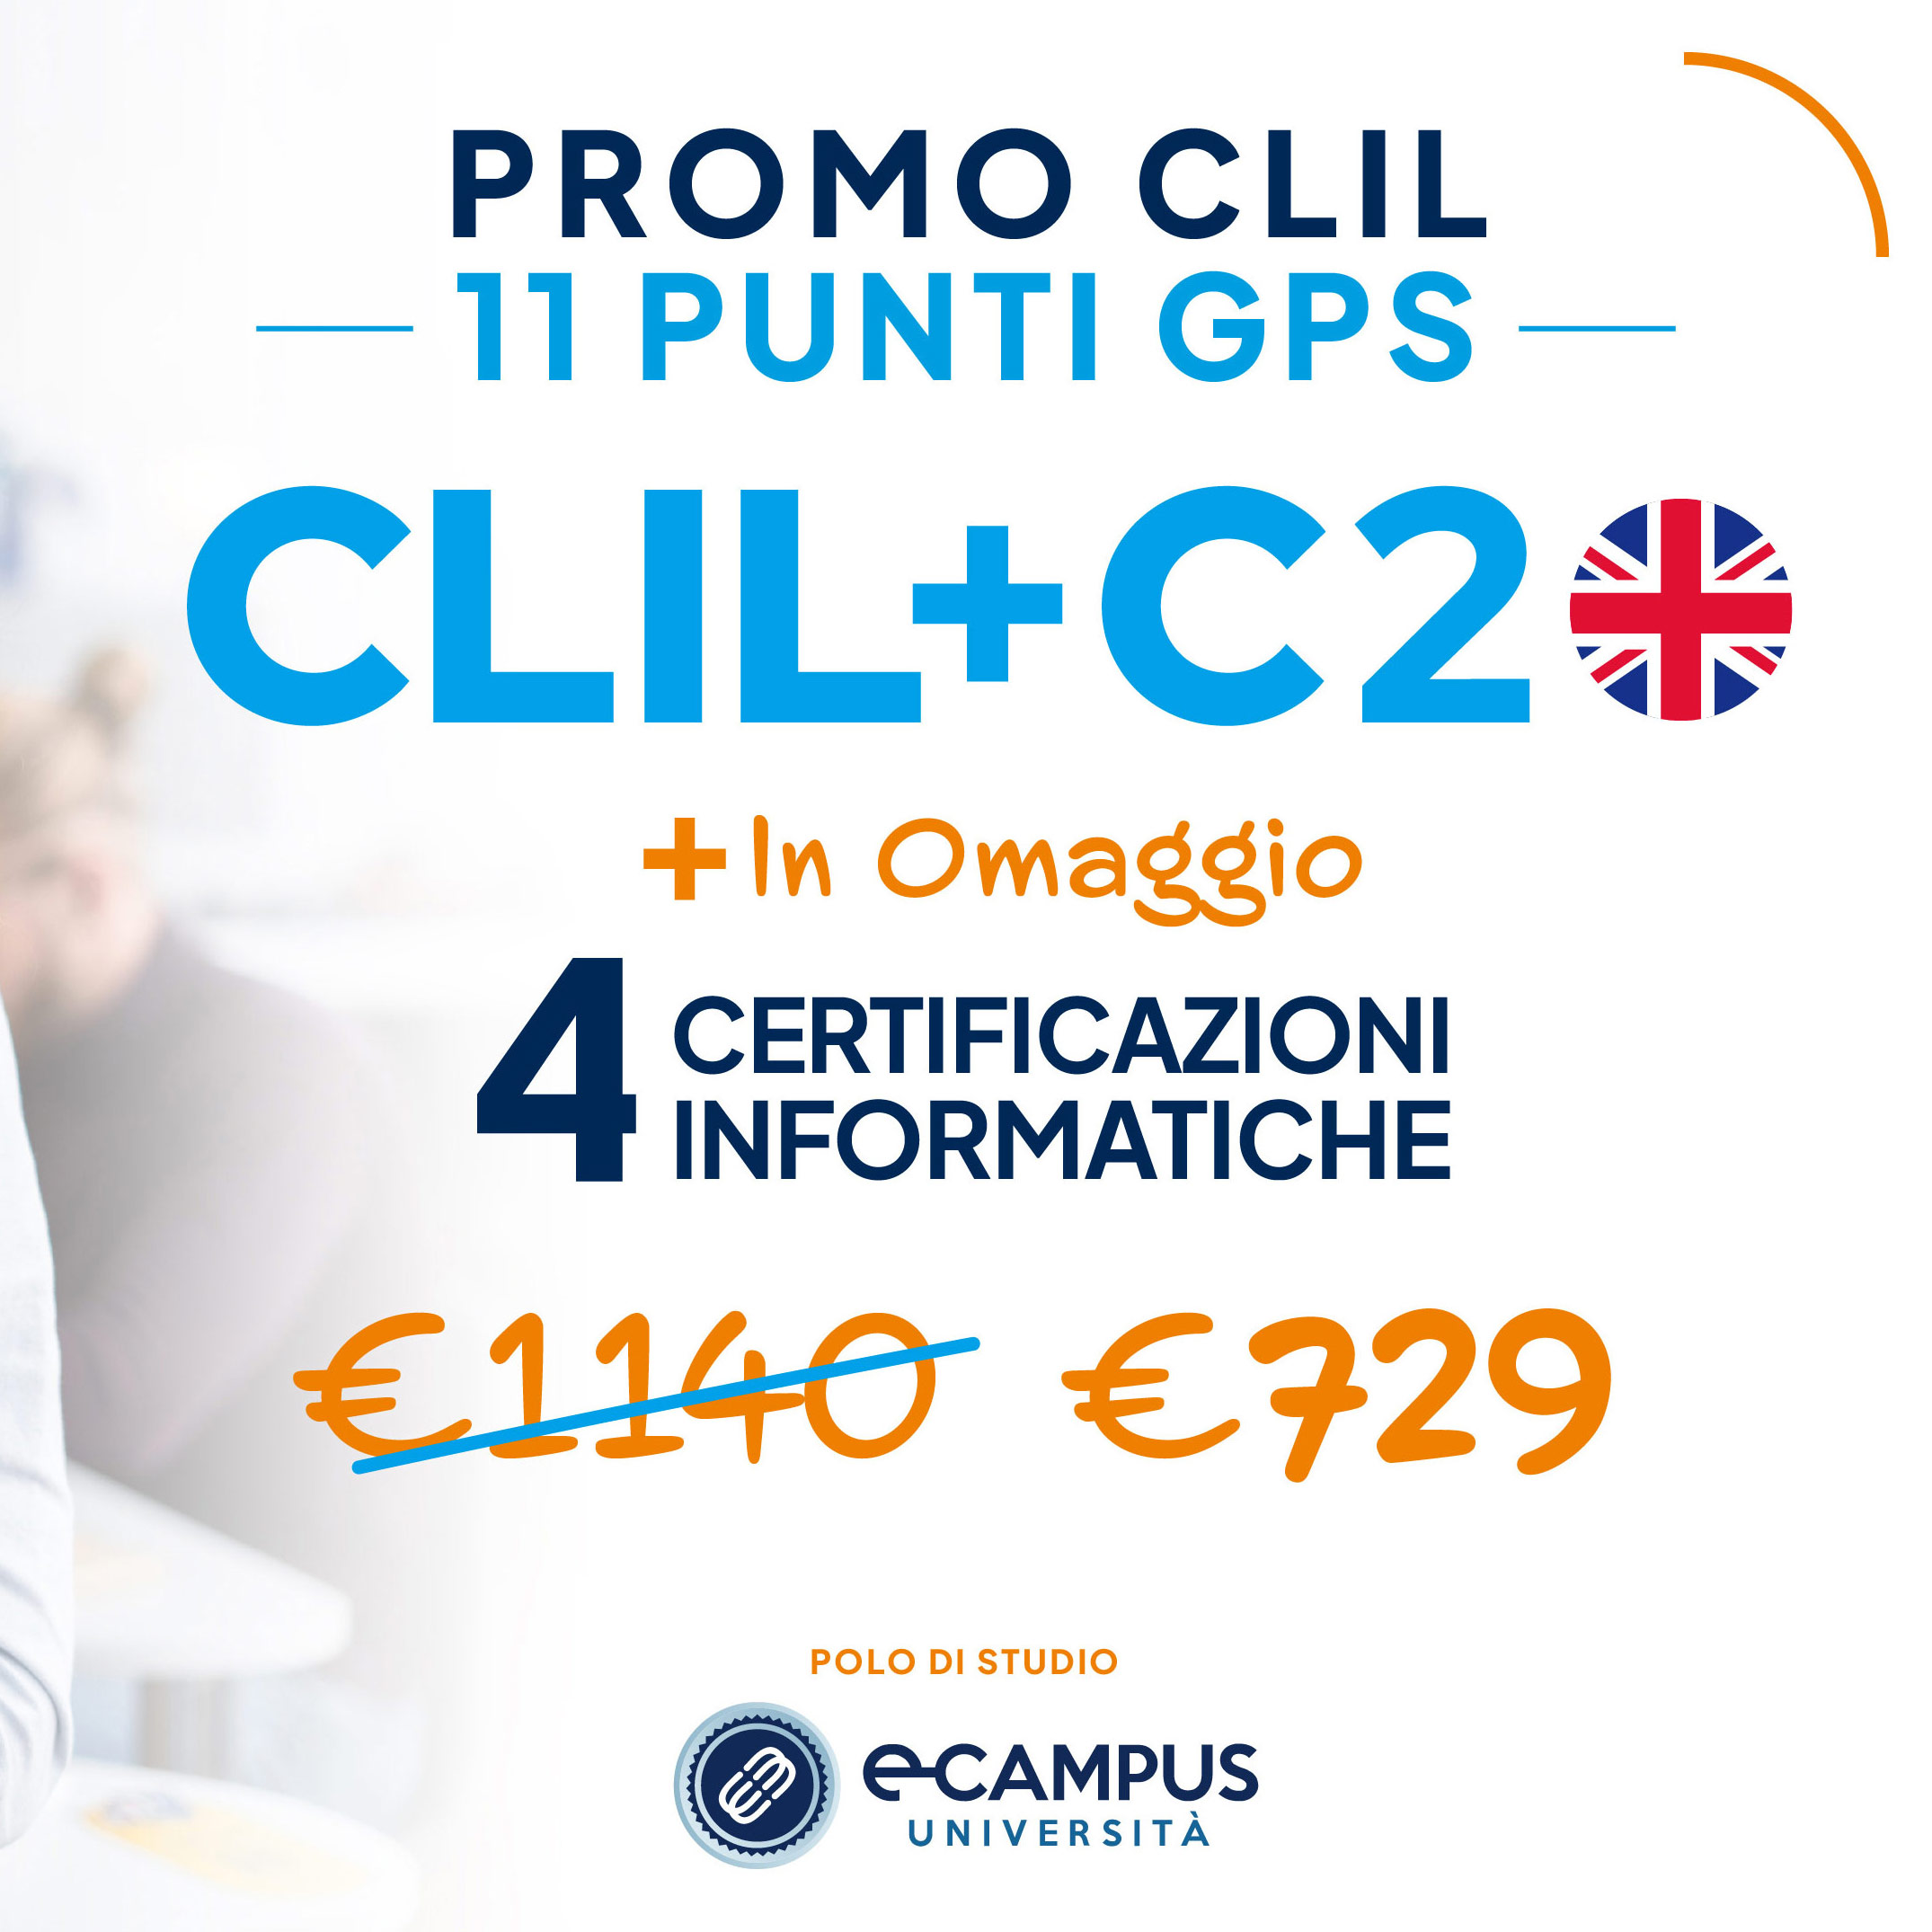 PROMO CLIL C2 11 Punti GPS - 4 Certificazioni Informatiche in Omaggio